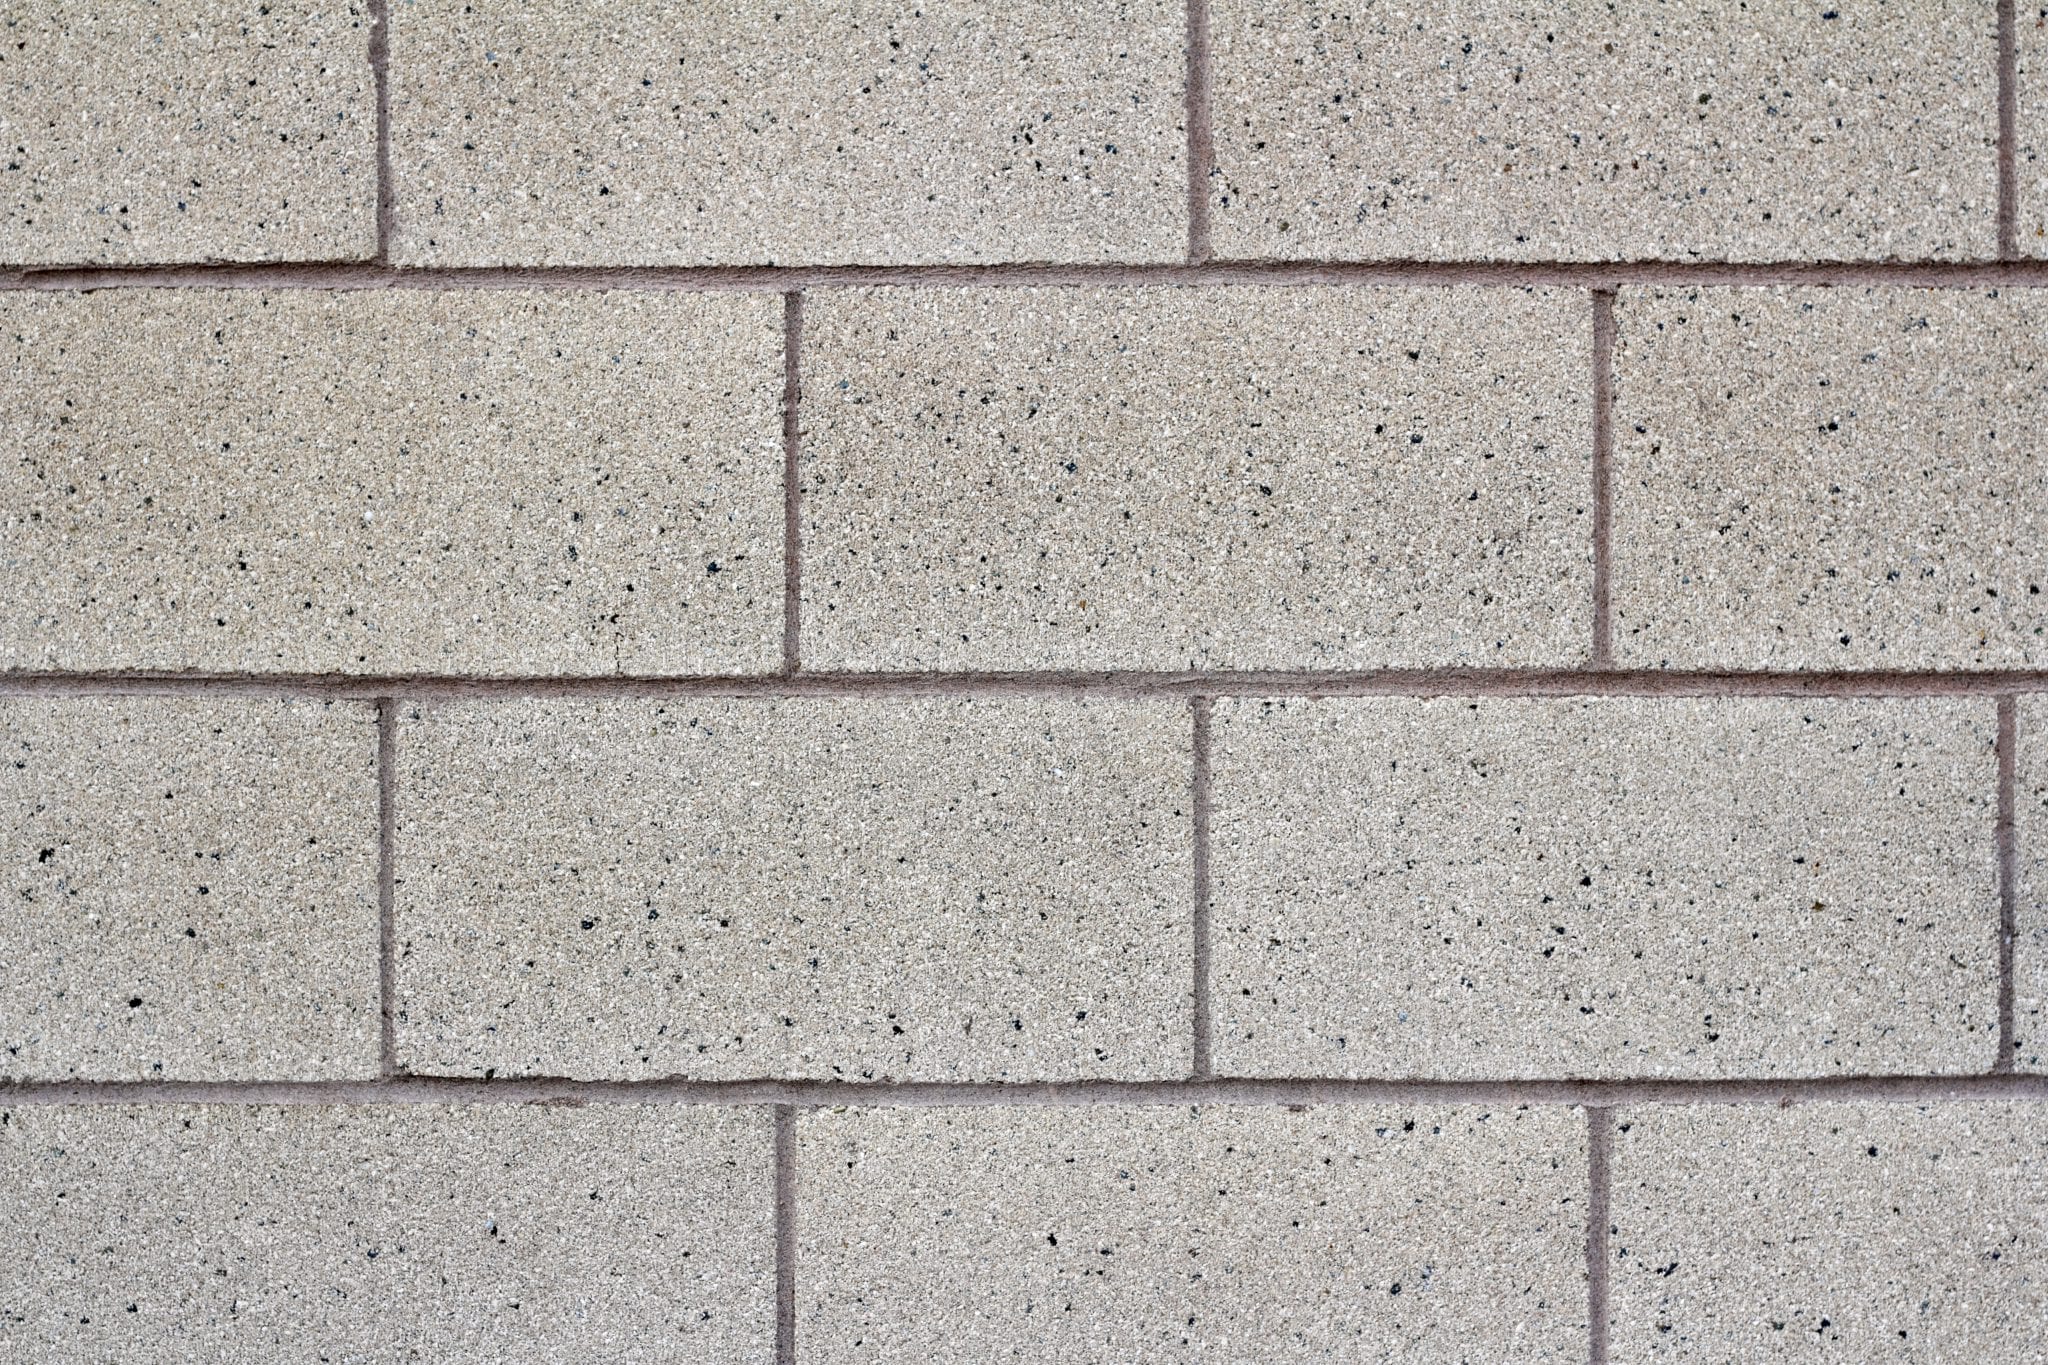 Concrete Masonry Units & Architectural Block in TN | ACME Block & Brick